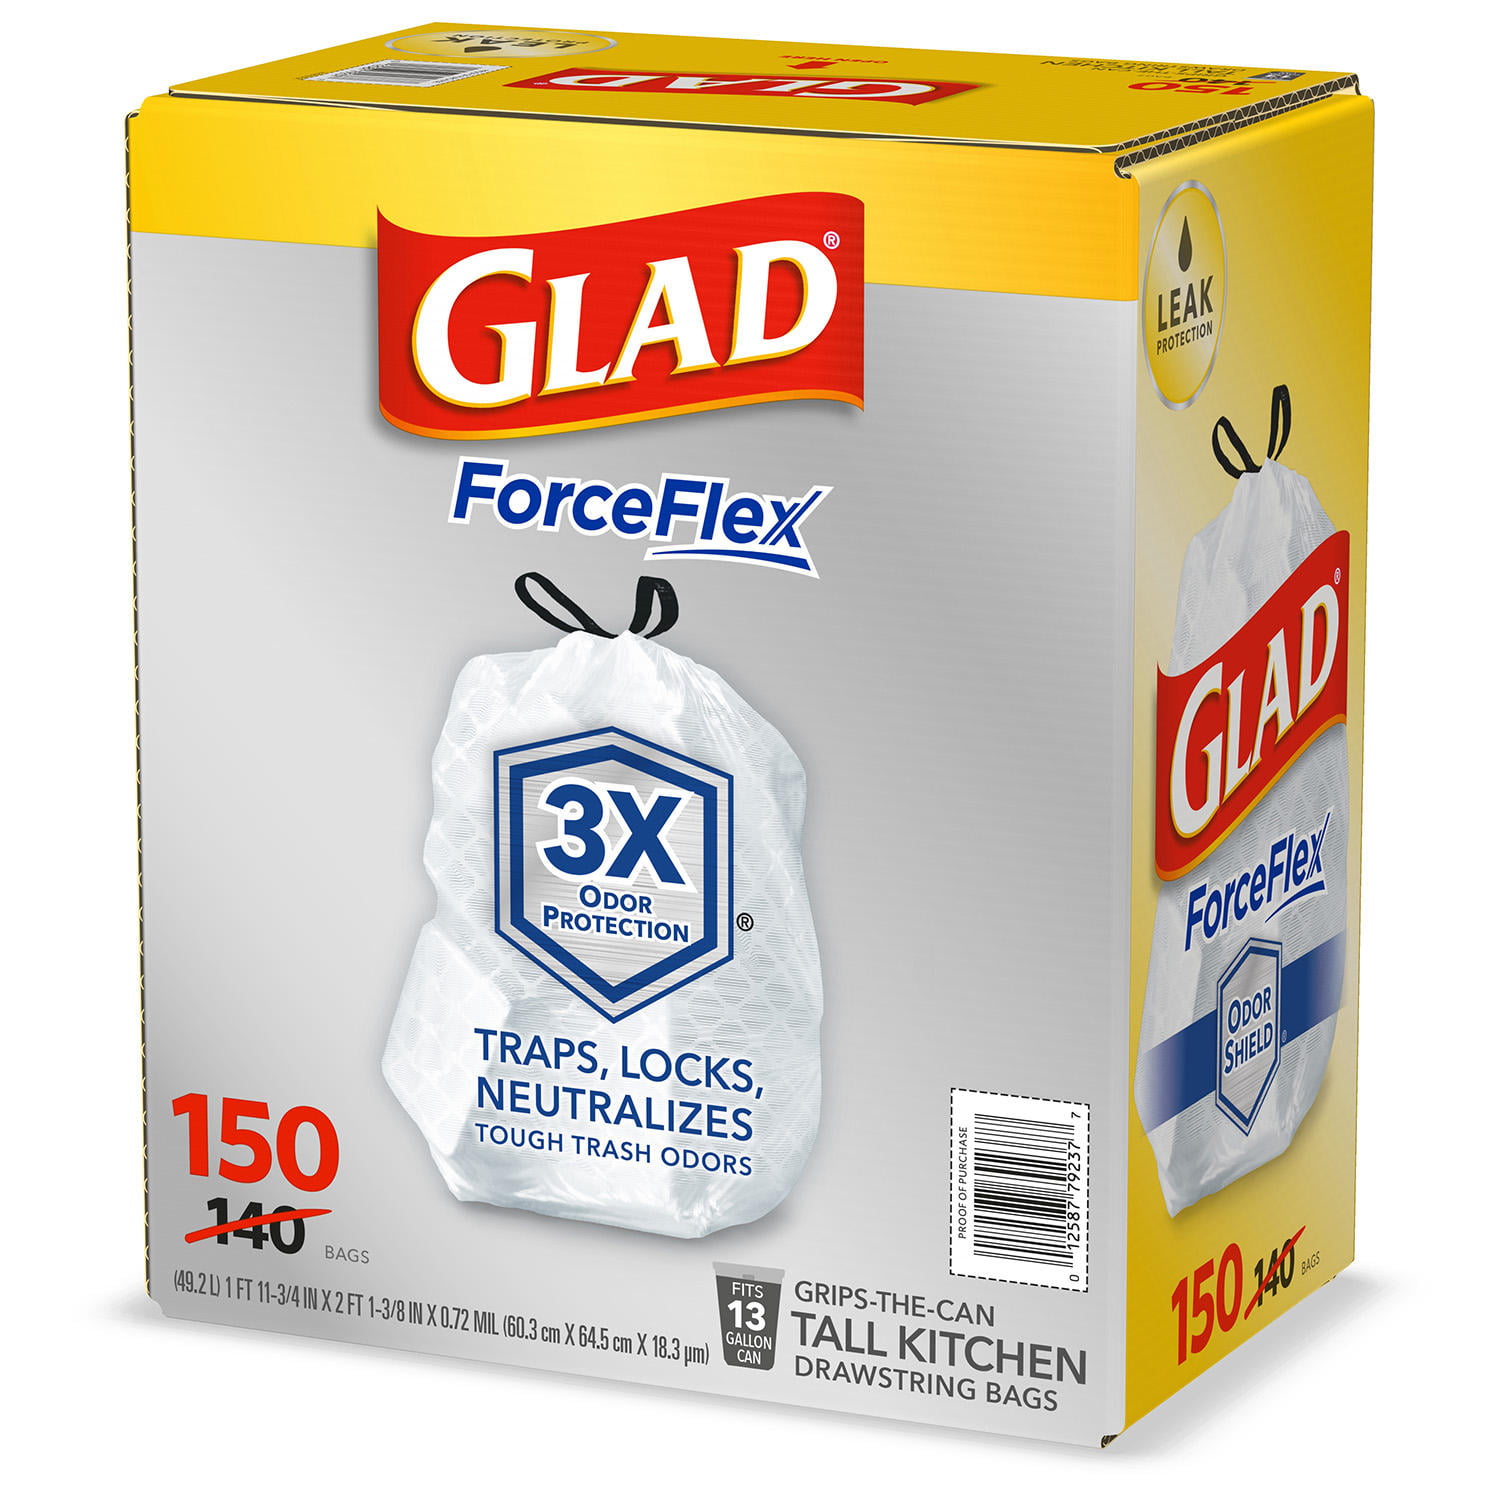 Glad® ForceFlex Tall Kitchen Drawstring Bags (100 PK)